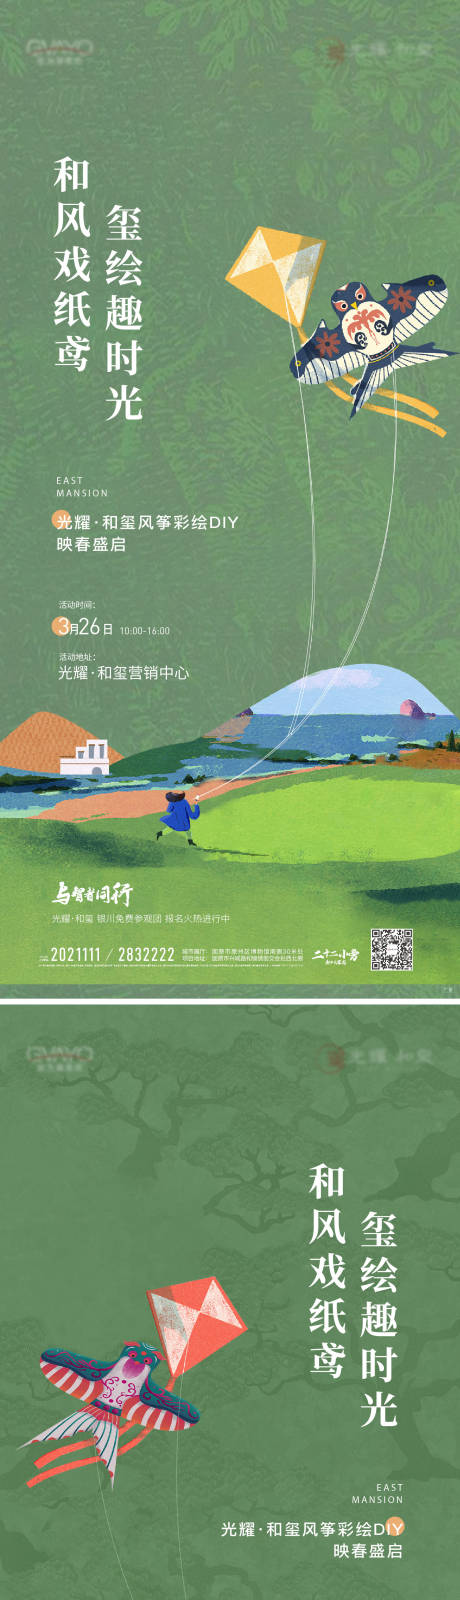 地产风筝活动系列海报